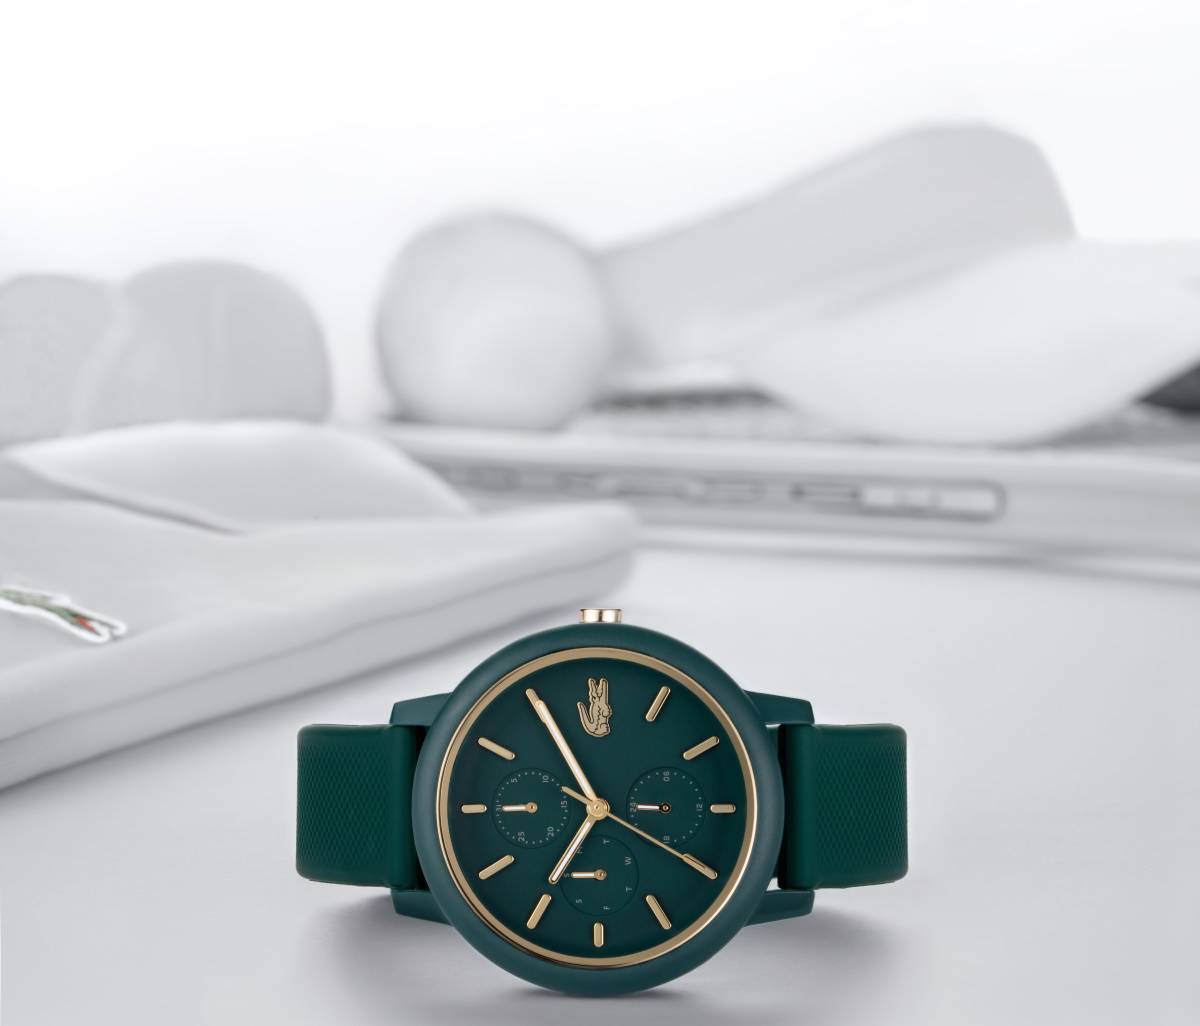 Wielofunkcyjna kolekcja zegarków Lacoste 12.12. Wielofunkcyjna kolekcja Lacoste 12.12 to nowa interpretacja klasycznego zegarka, dostępna w szerokiej gamie kolorów.